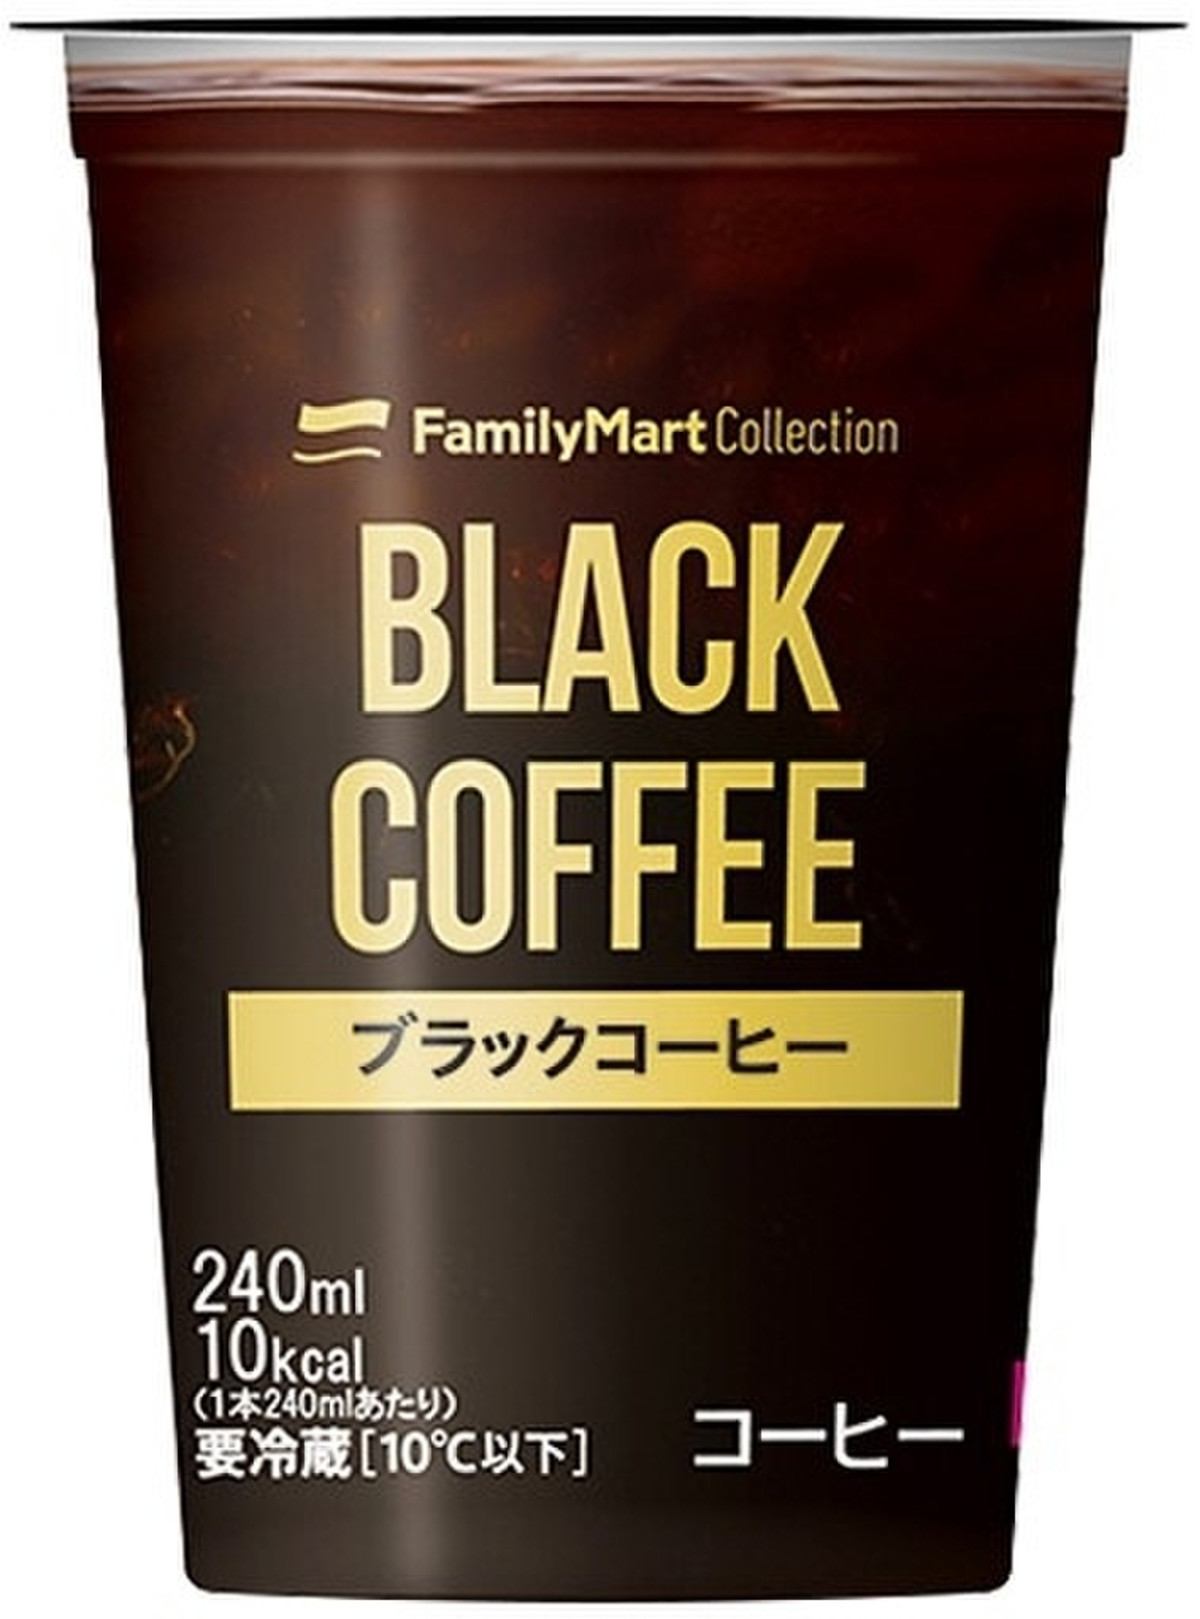 中評価 ファミリーマート Familymart Collection ブラックコーヒーのクチコミ 評価 値段 価格情報 もぐナビ